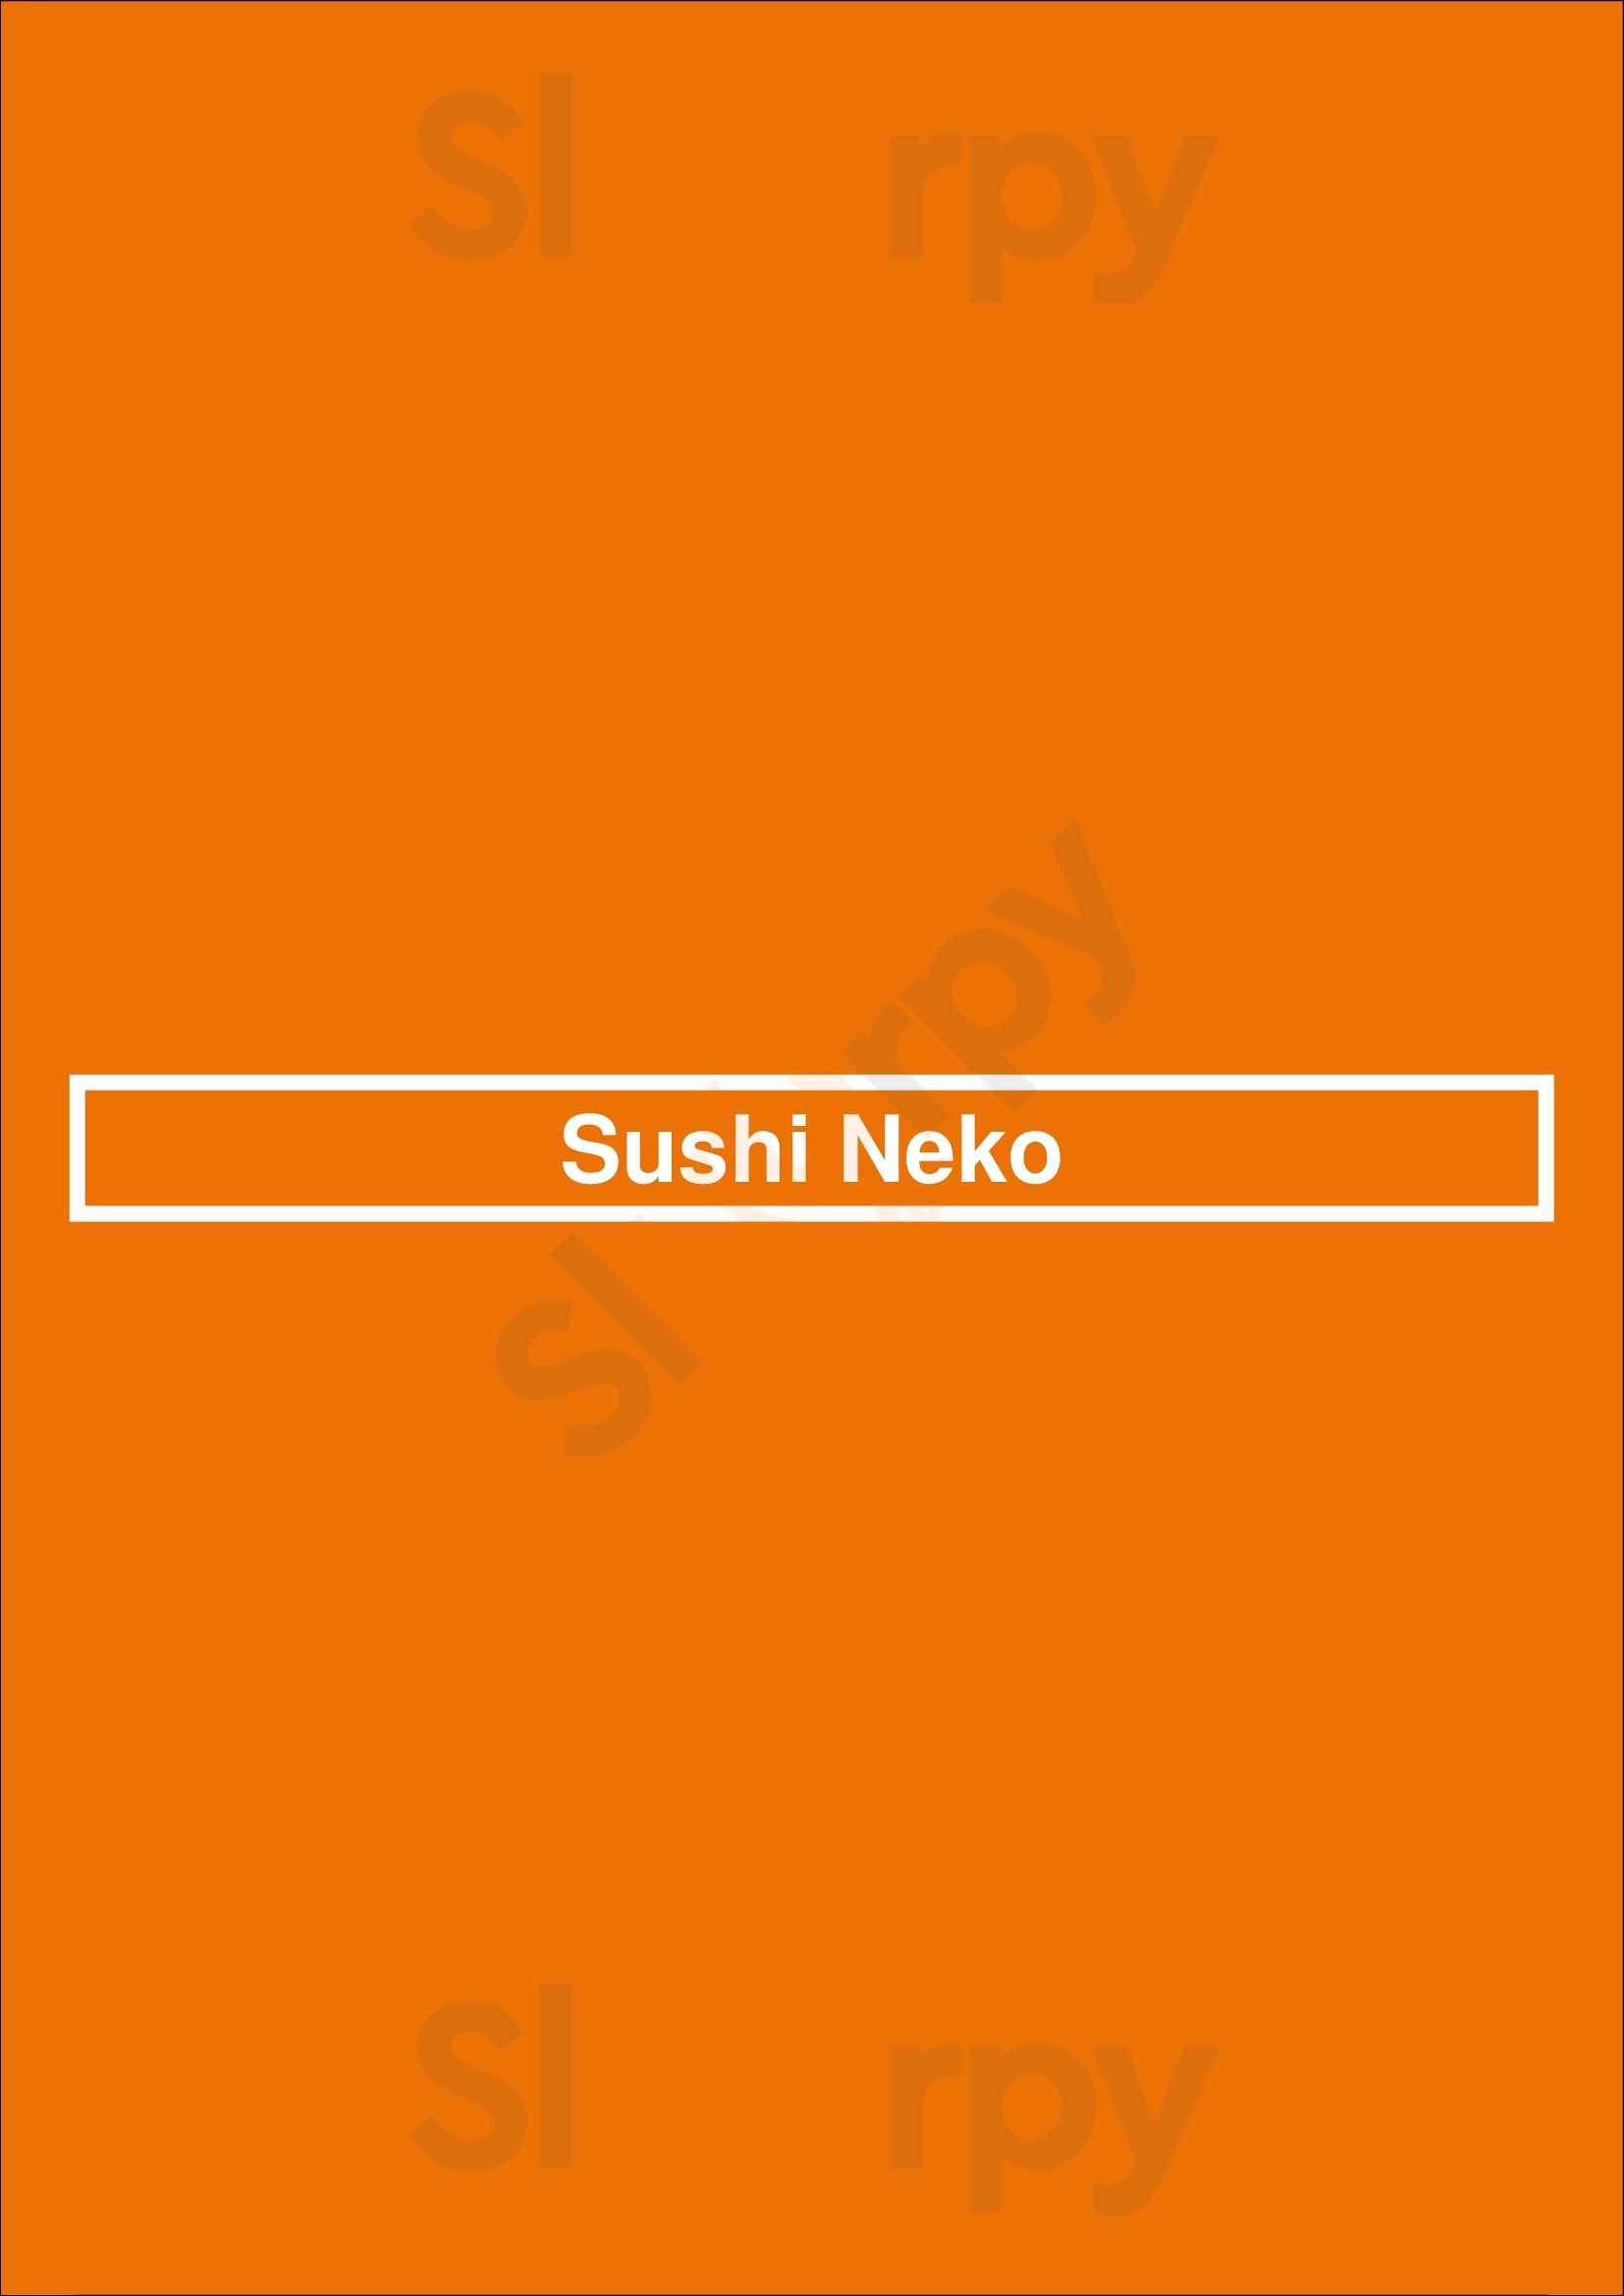 Sushi Neko Oklahoma City Menu - 1